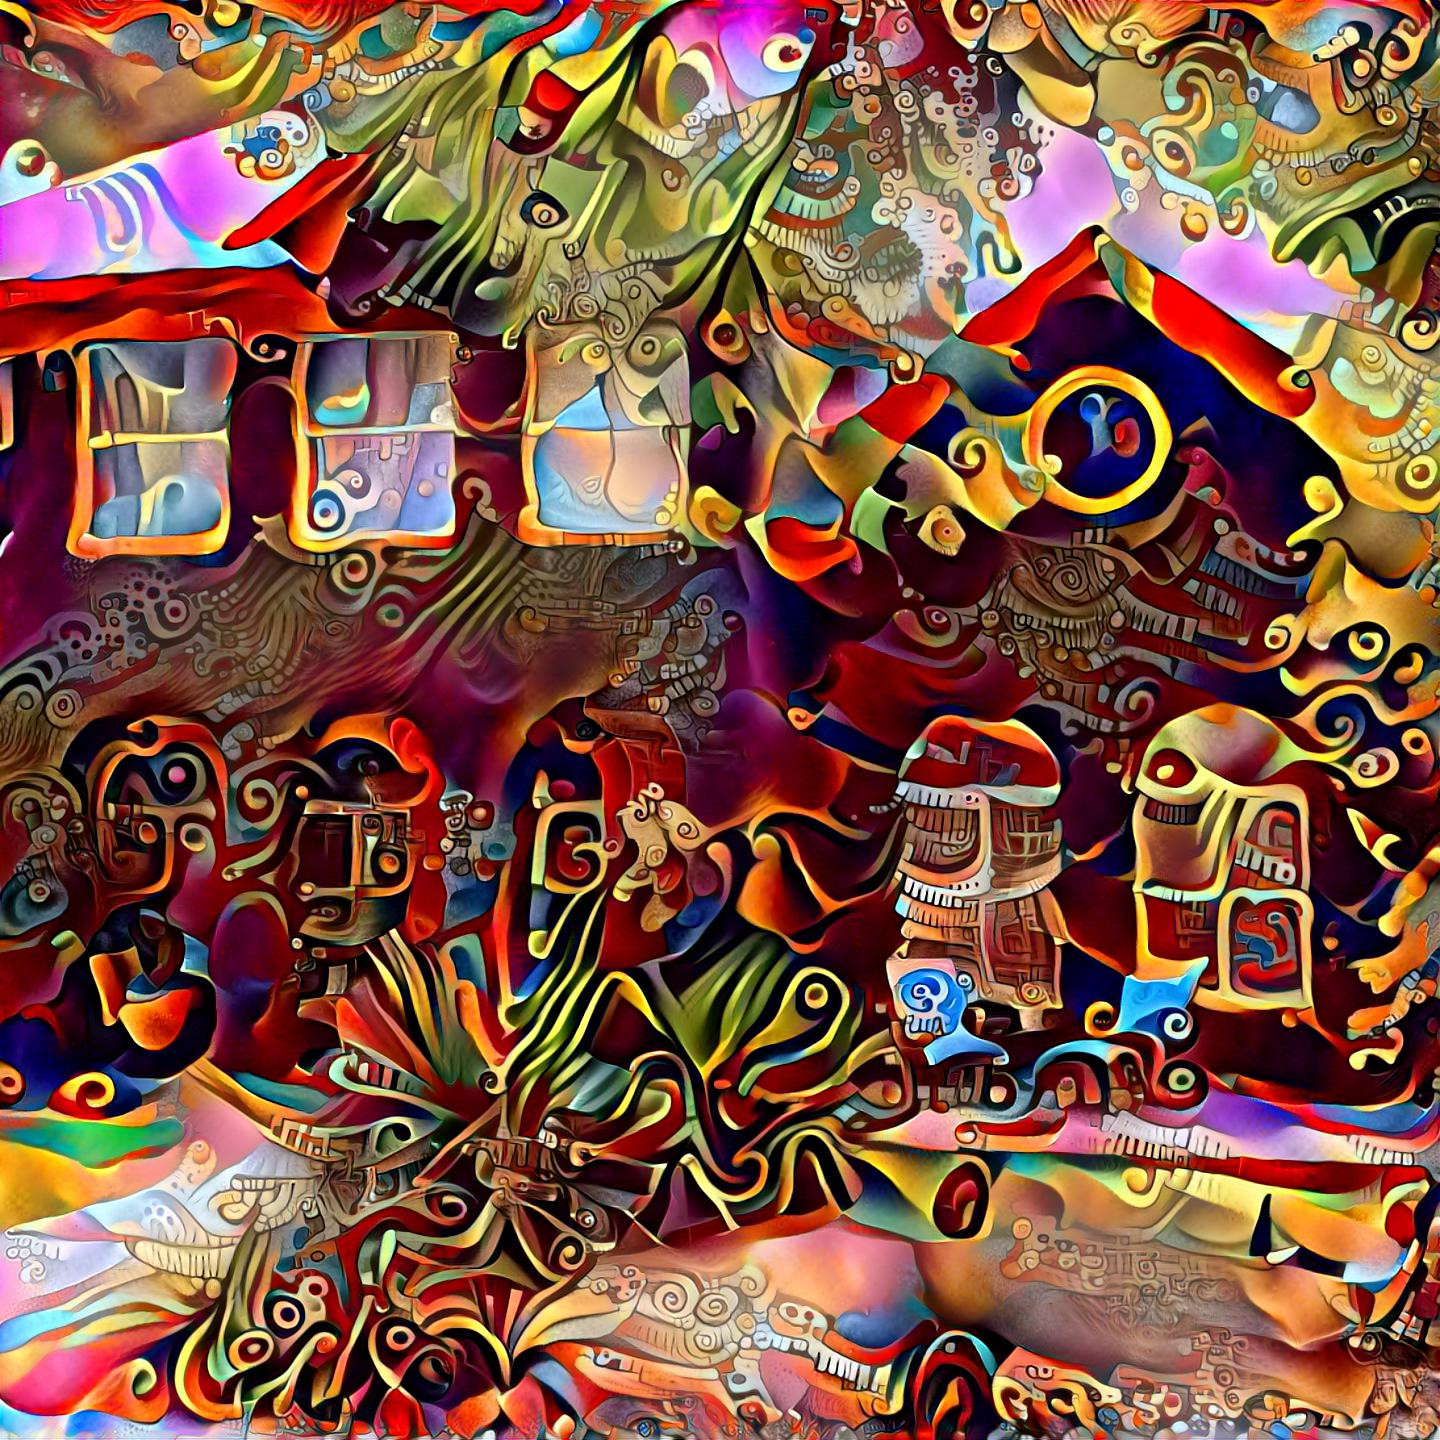 Ivy house, 78751, on acid